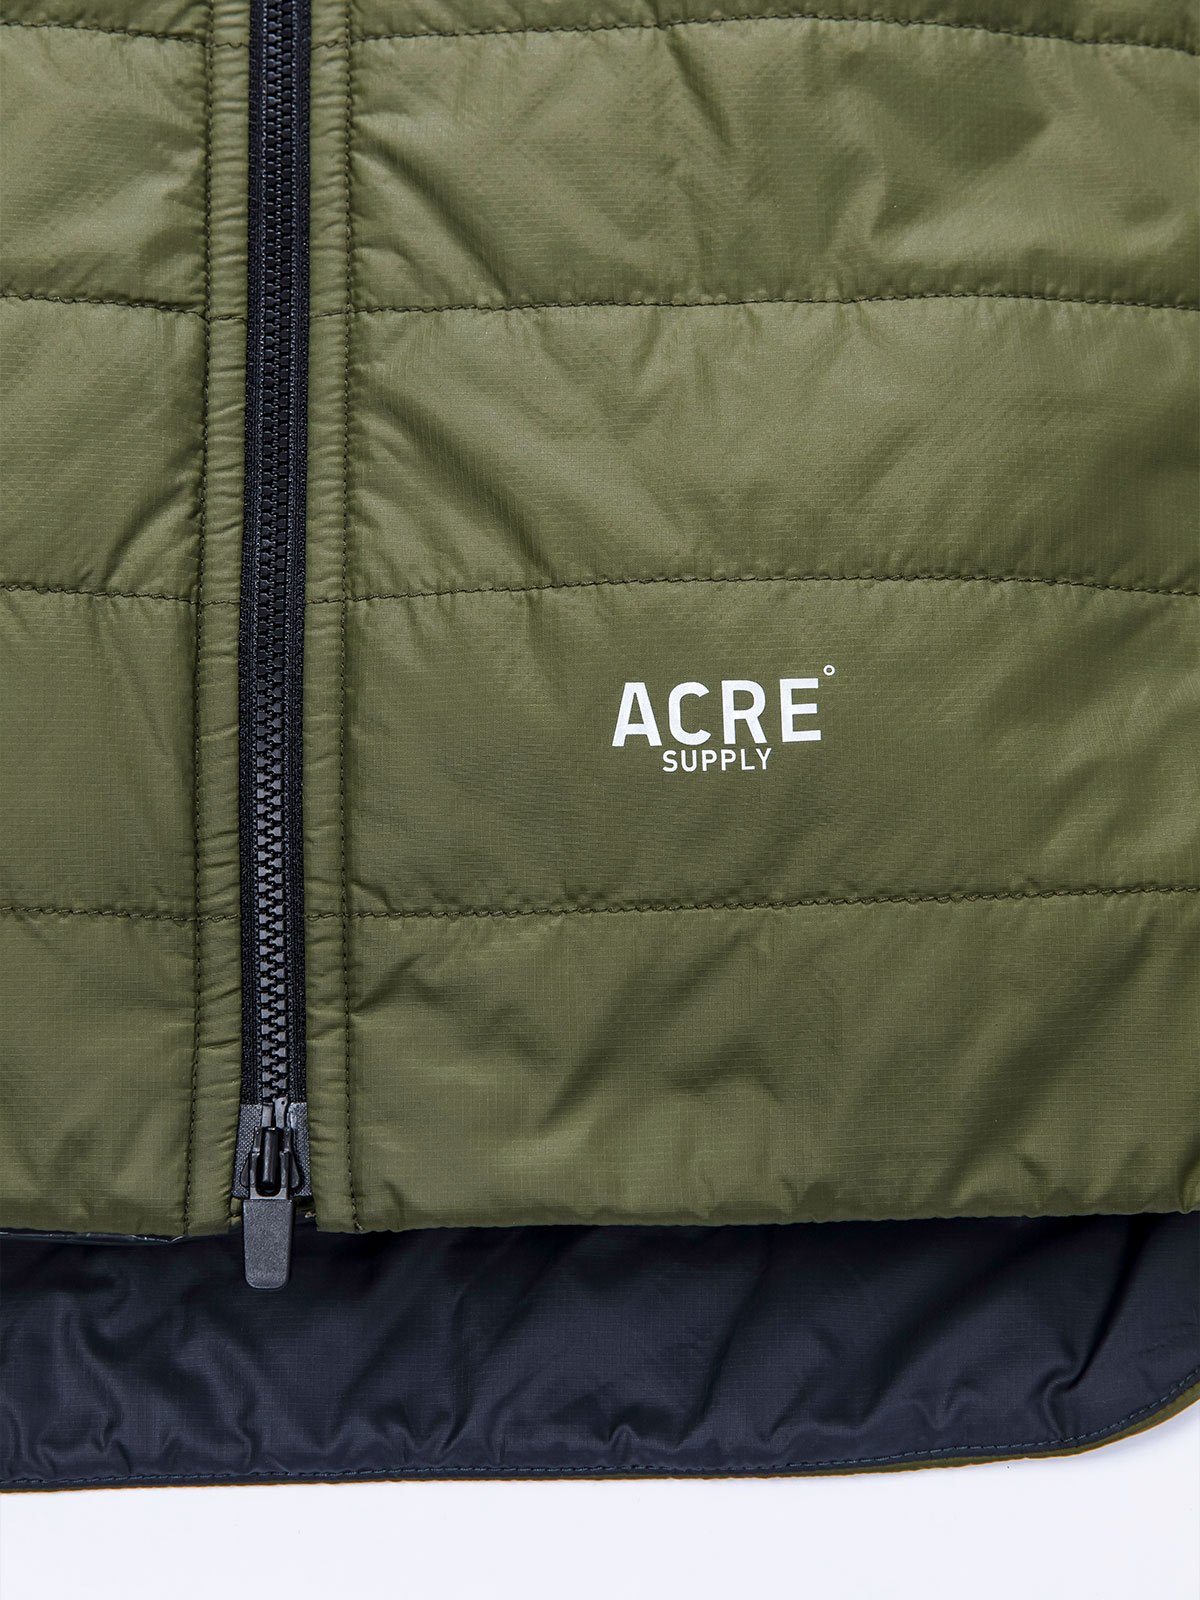 Acre Series Jacket von Mission Workshop - Wetterfeste Taschen und technische Bekleidung - San Francisco & Los Angeles - Für die Ewigkeit gebaut - Garantiert